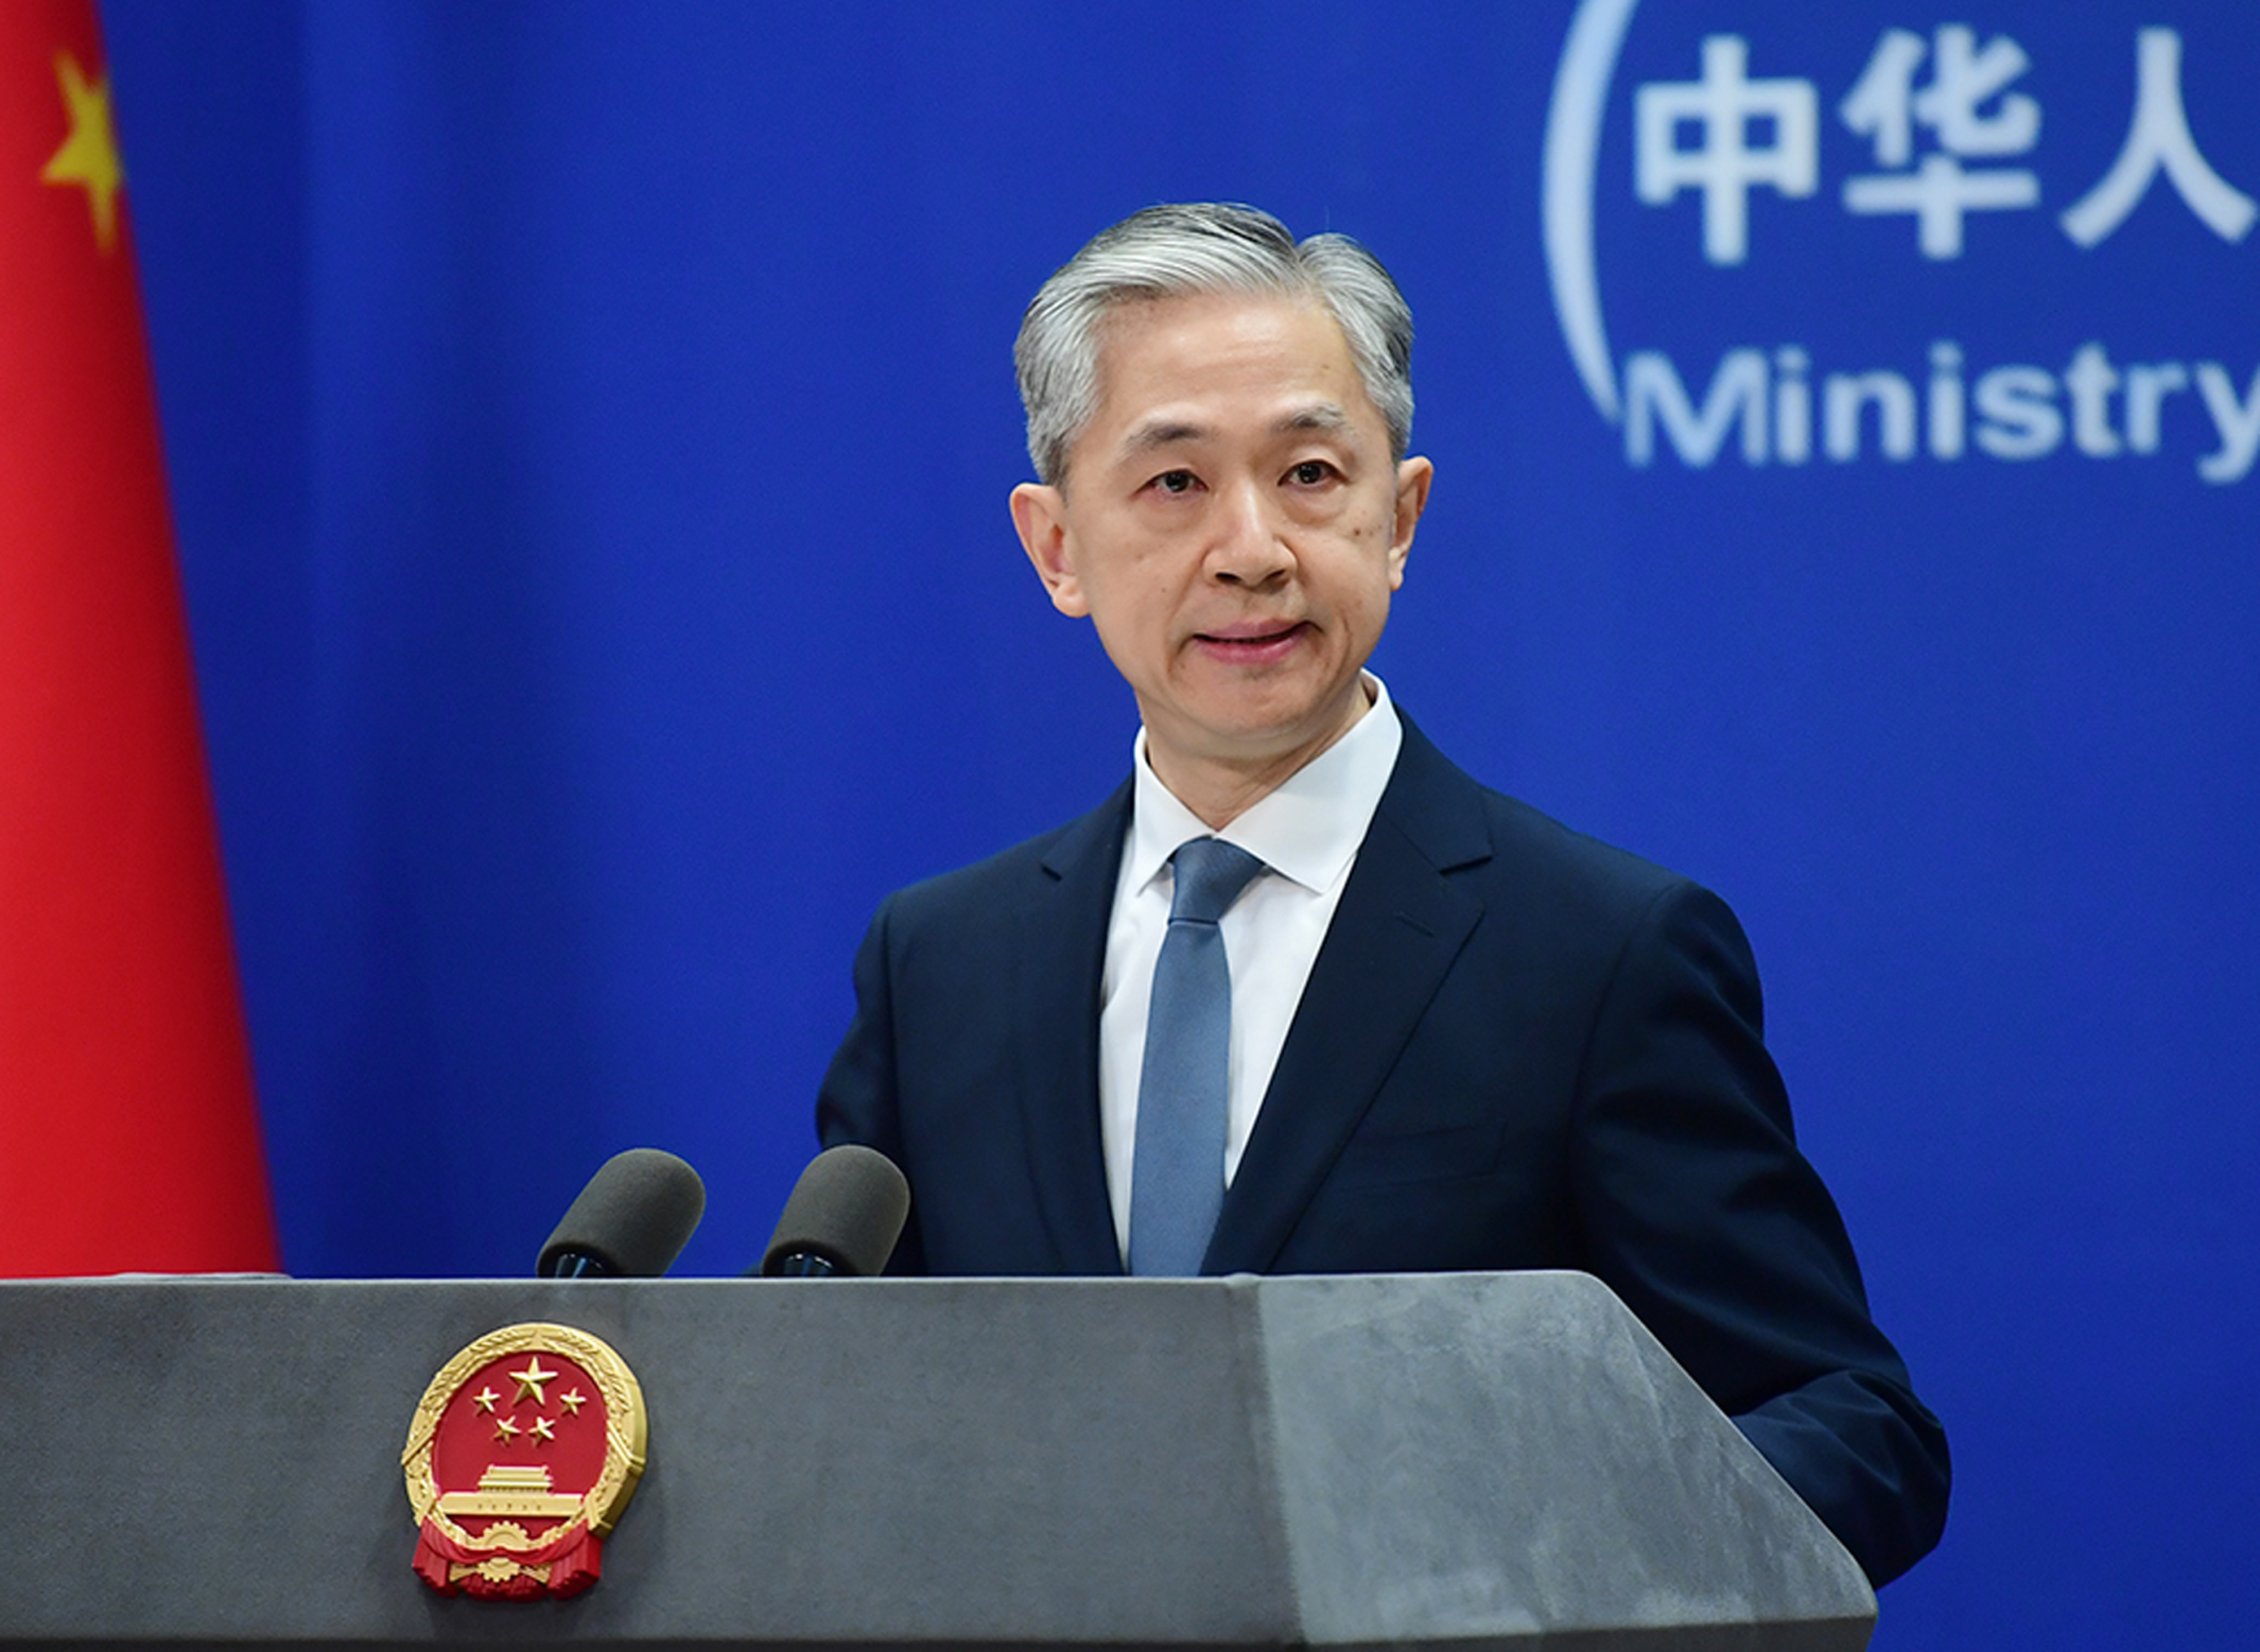 El portavoz del Ministerio de Relaciones Exteriores de China, Wang Wenping, habló en una conferencia de prensa el 1 de marzo en Beijing, China.